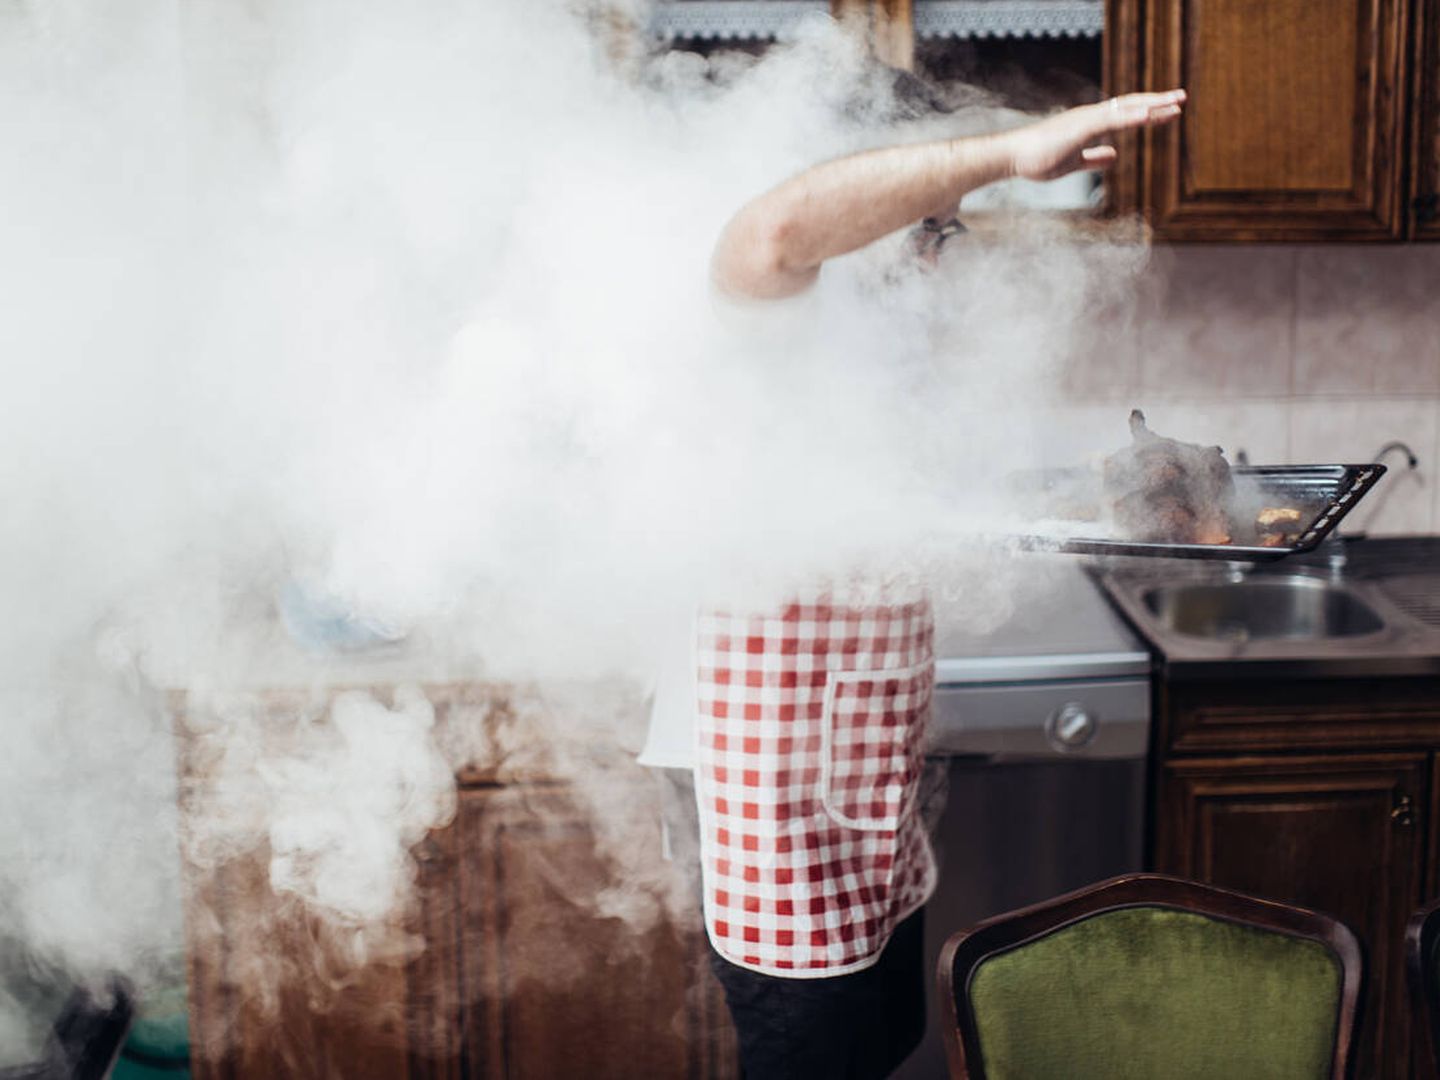 El humo del cocinado es perjudicial. (iStock)